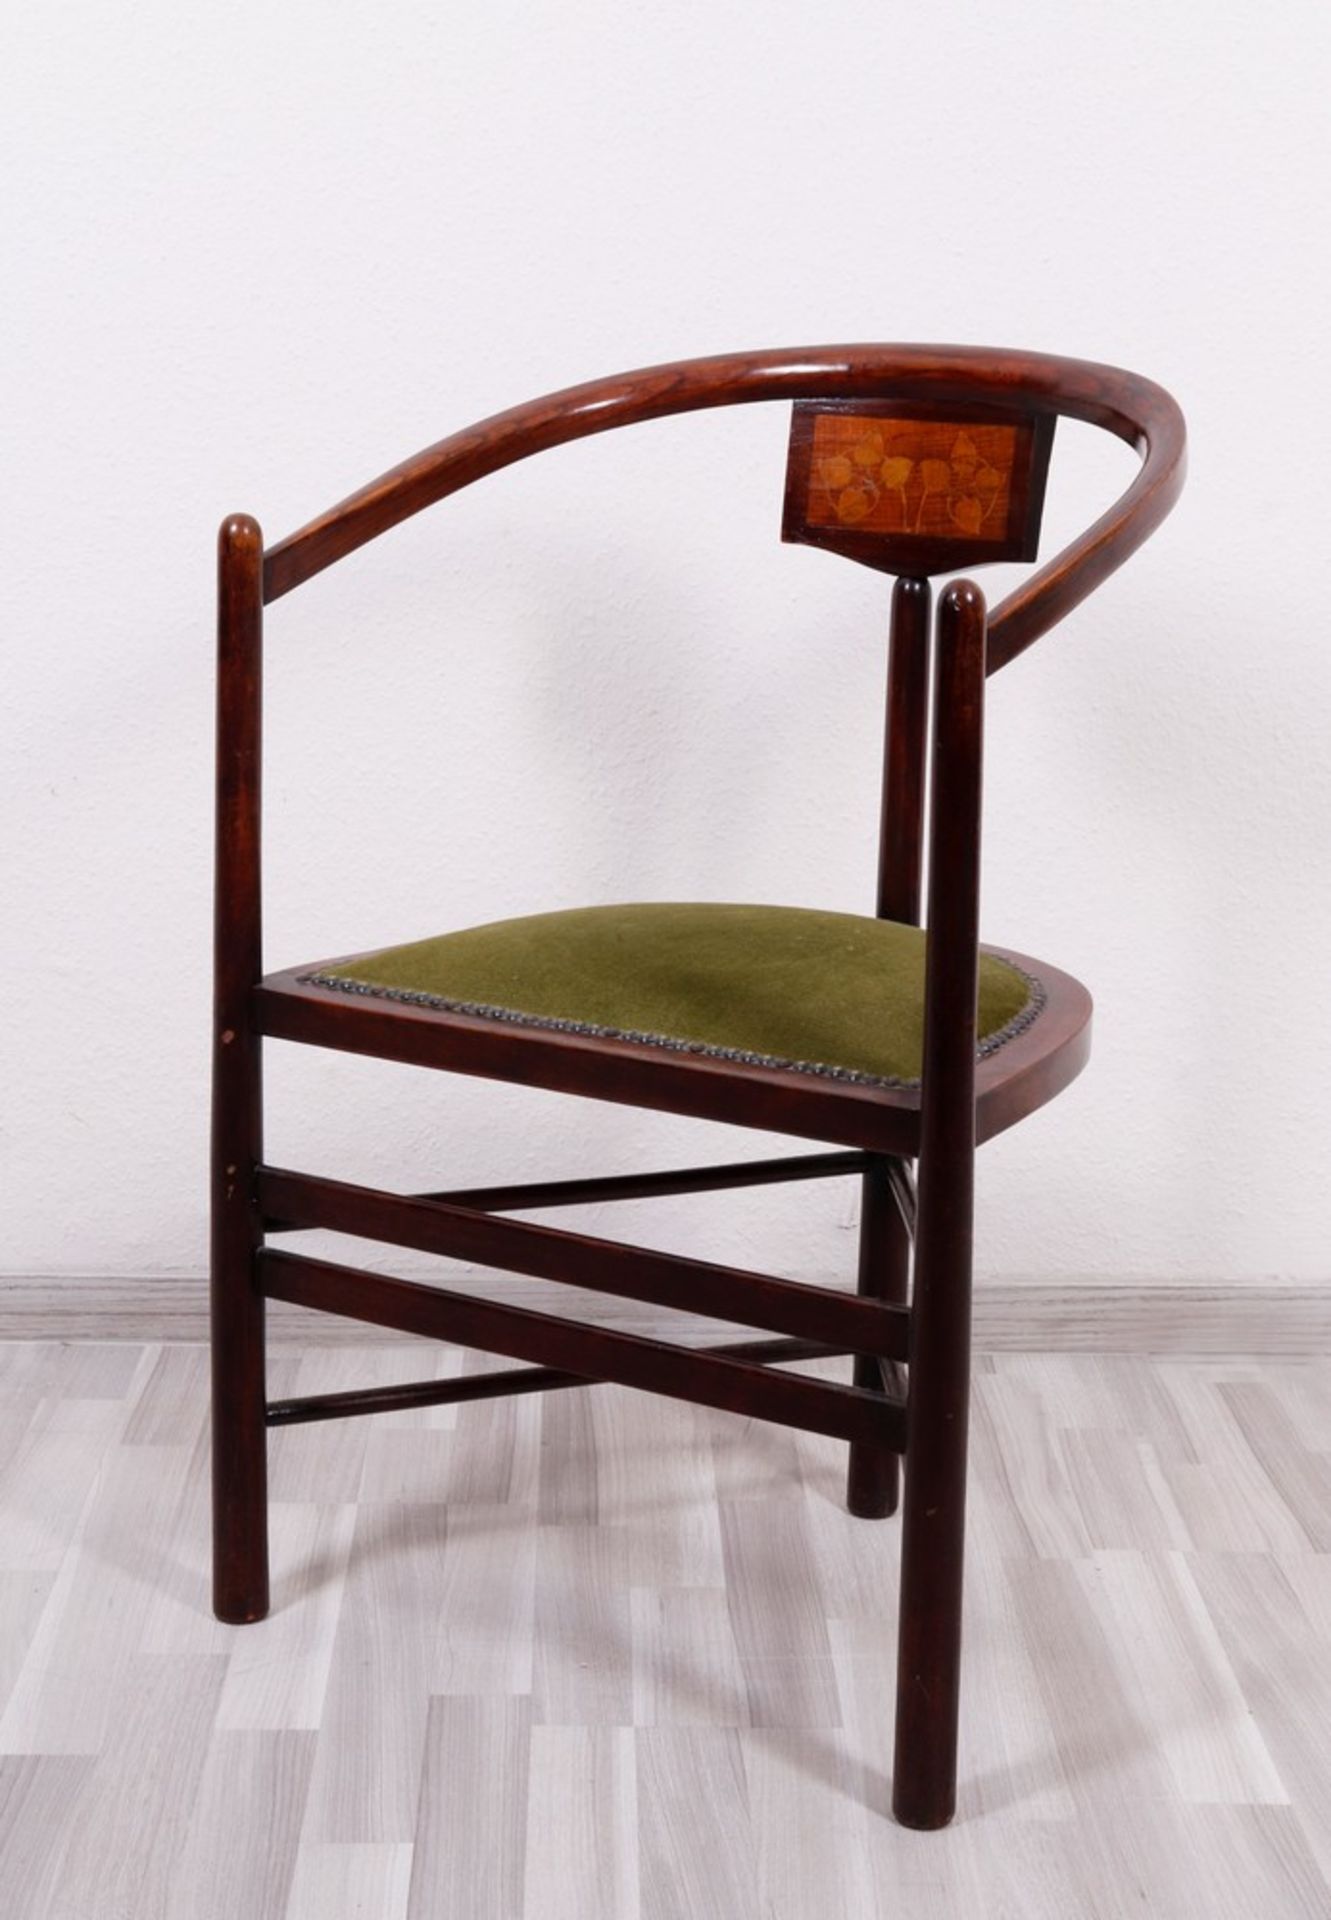 Art Nouveau corner chair, probably German, c. 1900